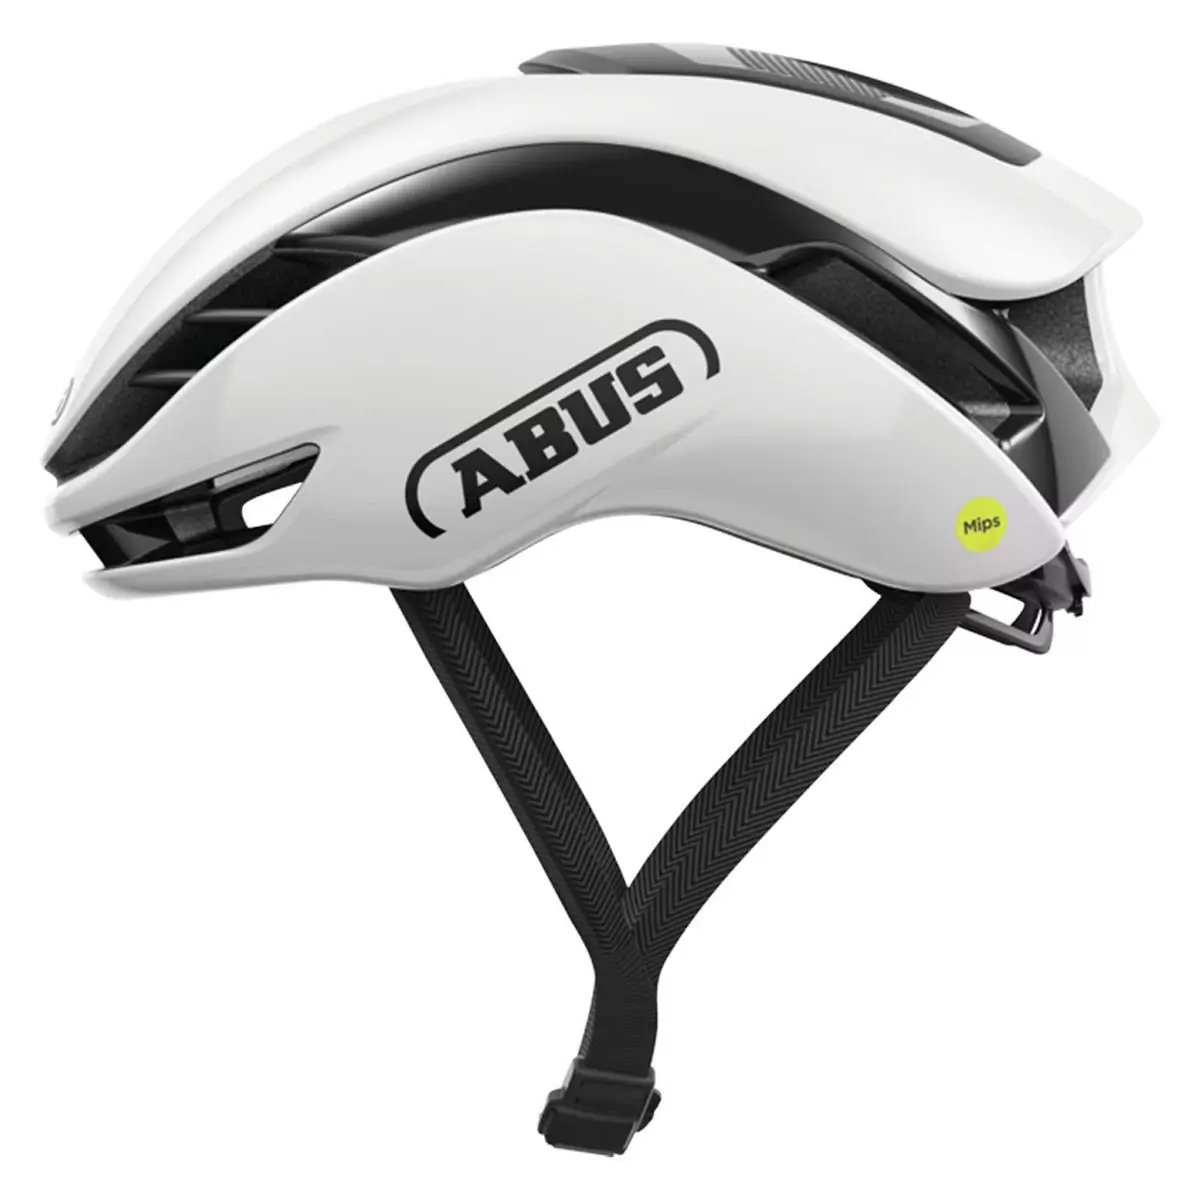 Gamechanger 2.0 Shiny White Mips Helmet Size M (54-58cm) - image